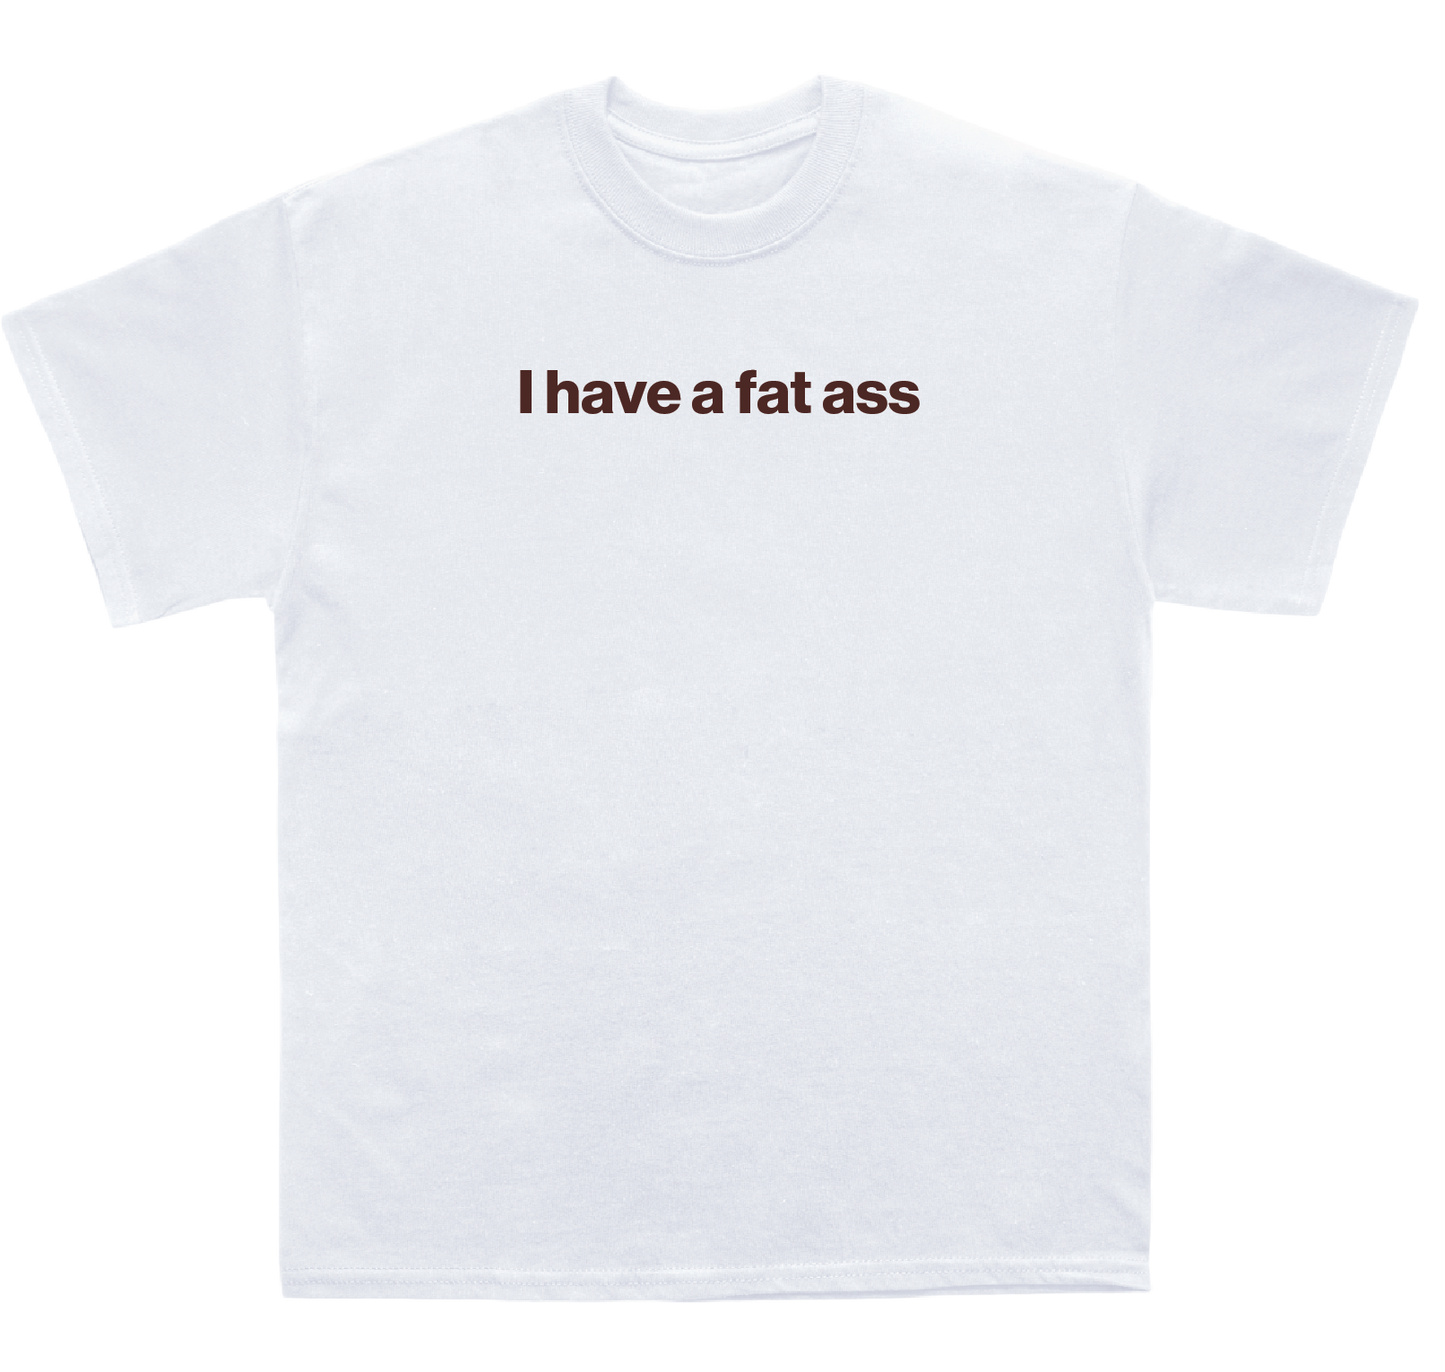 I have a fat ass shirt